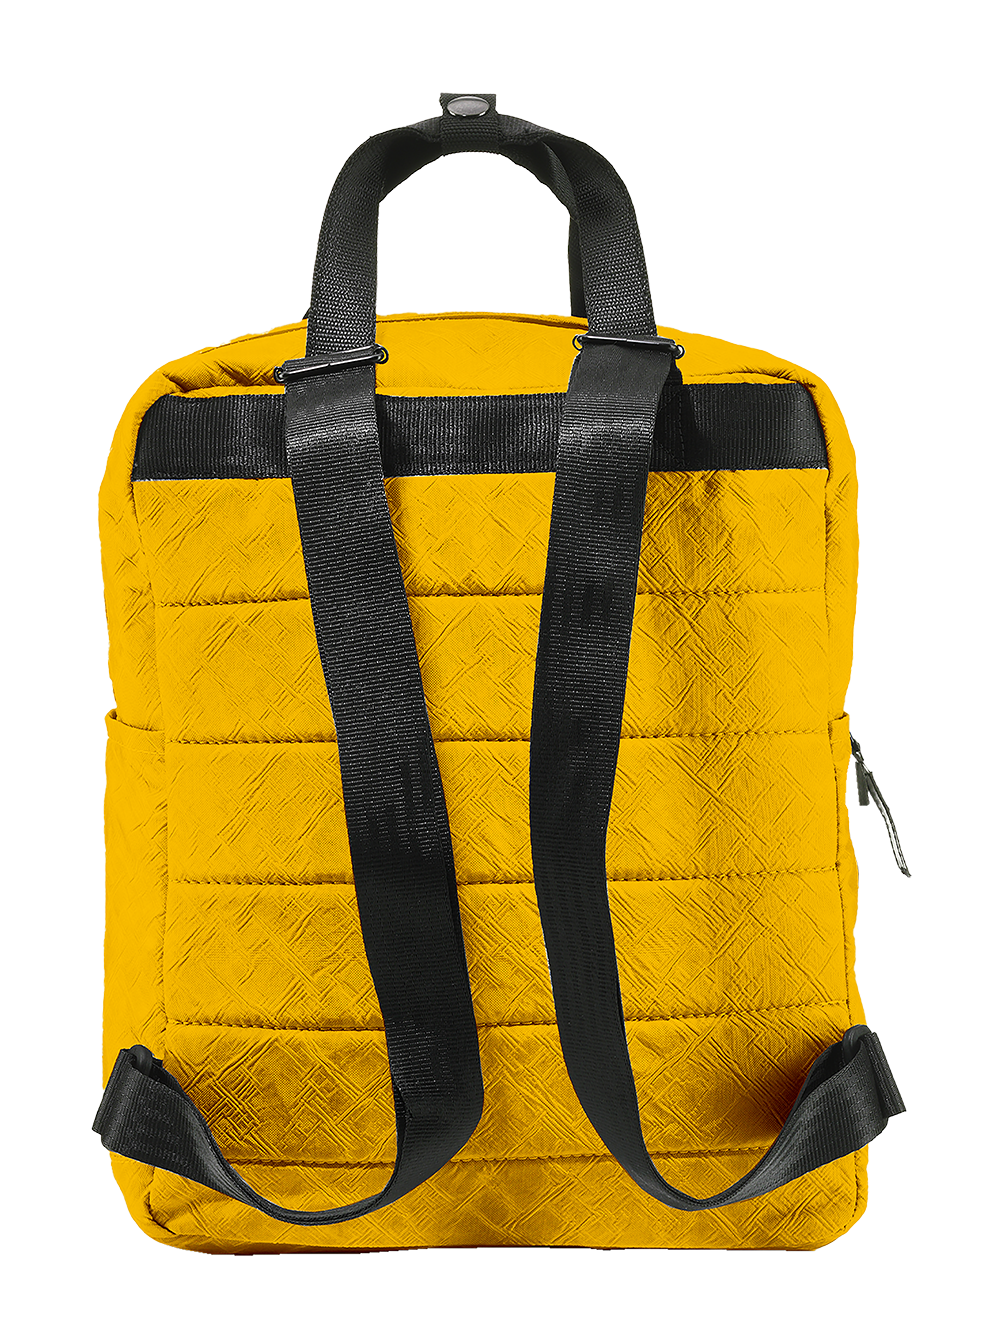 Airpaq Rucksack Qube - gelb gefärbt